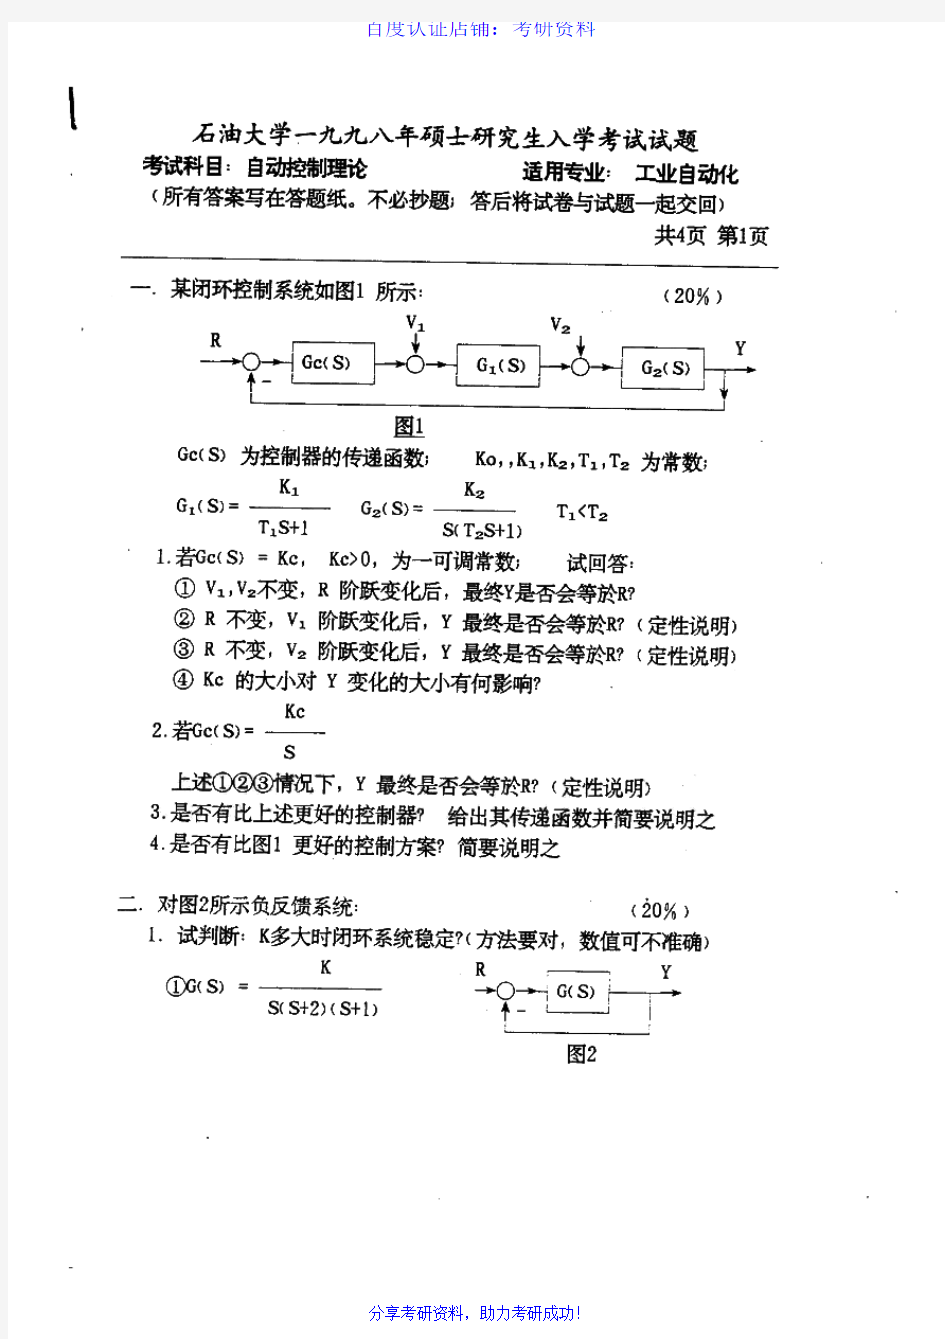 中国石油大学(北京)854自动控制原理历年考研试题